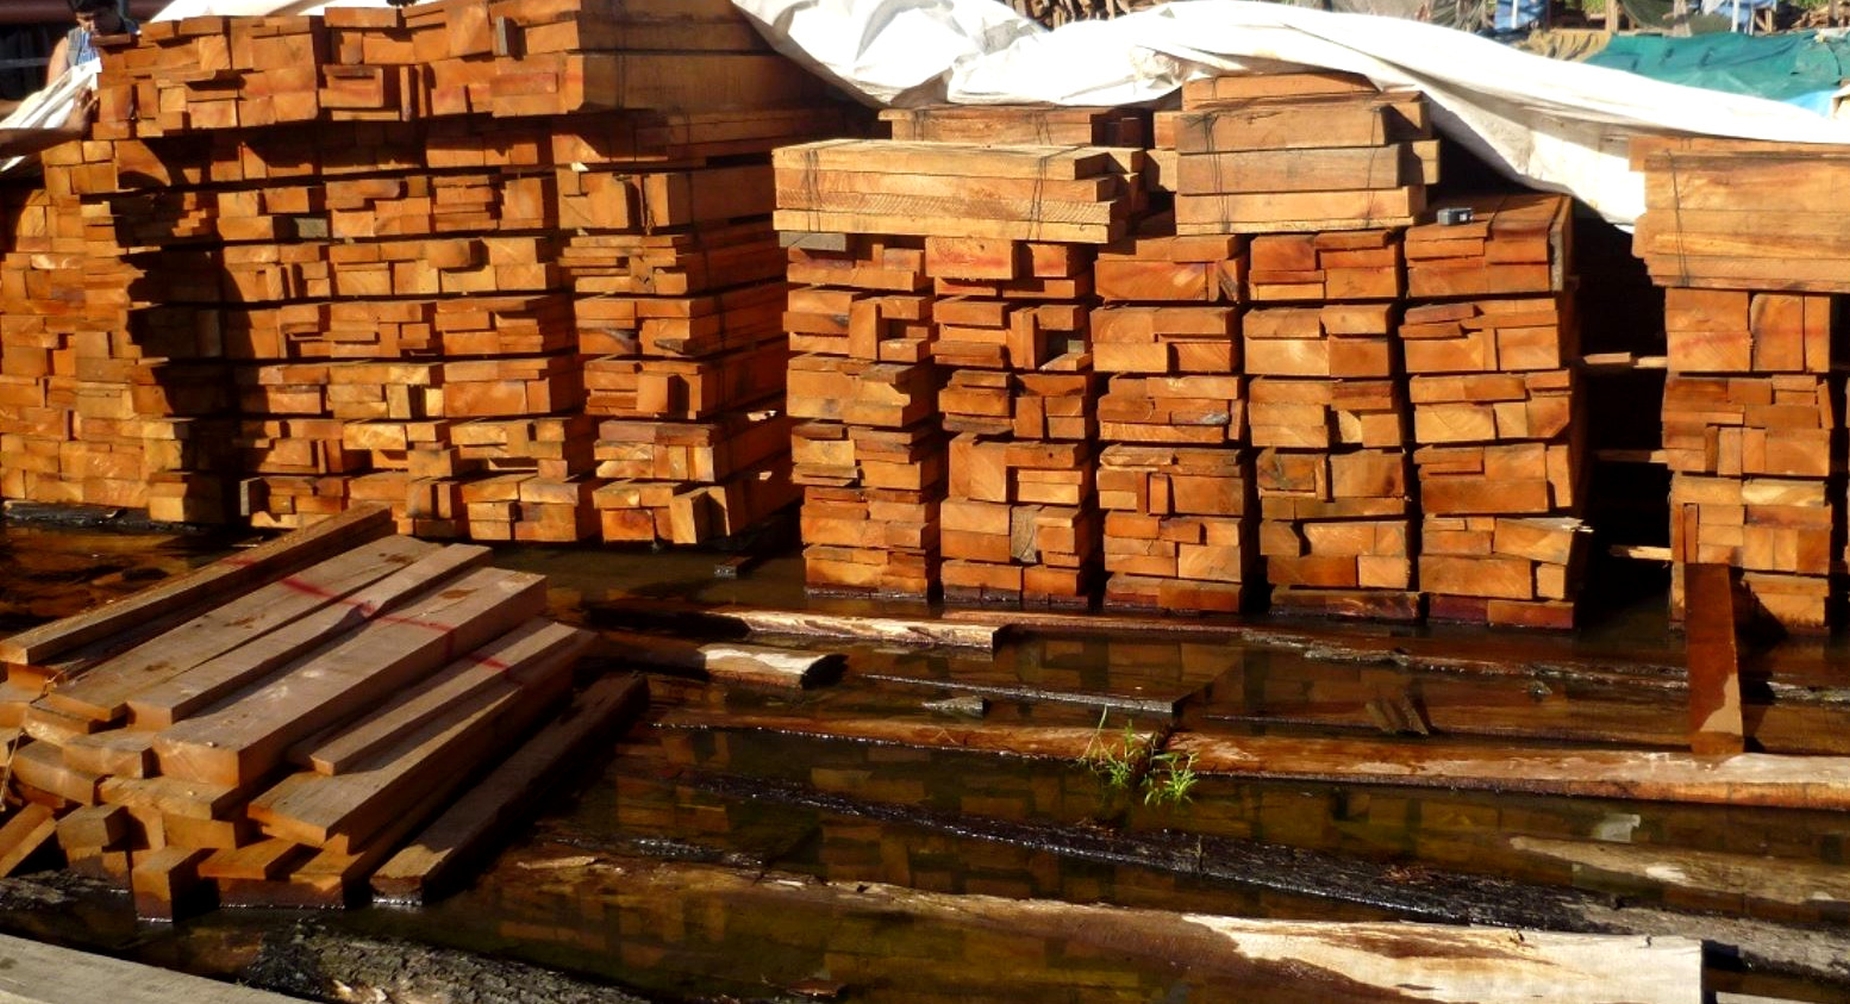 SANCIONADA. Inversiones La Oroza, la empresa del ingeniero forestal Luis Ángel Ascencio Jurado, se encuentra impedida de exportar madera hacia Estados Unidos hasta el 2023.